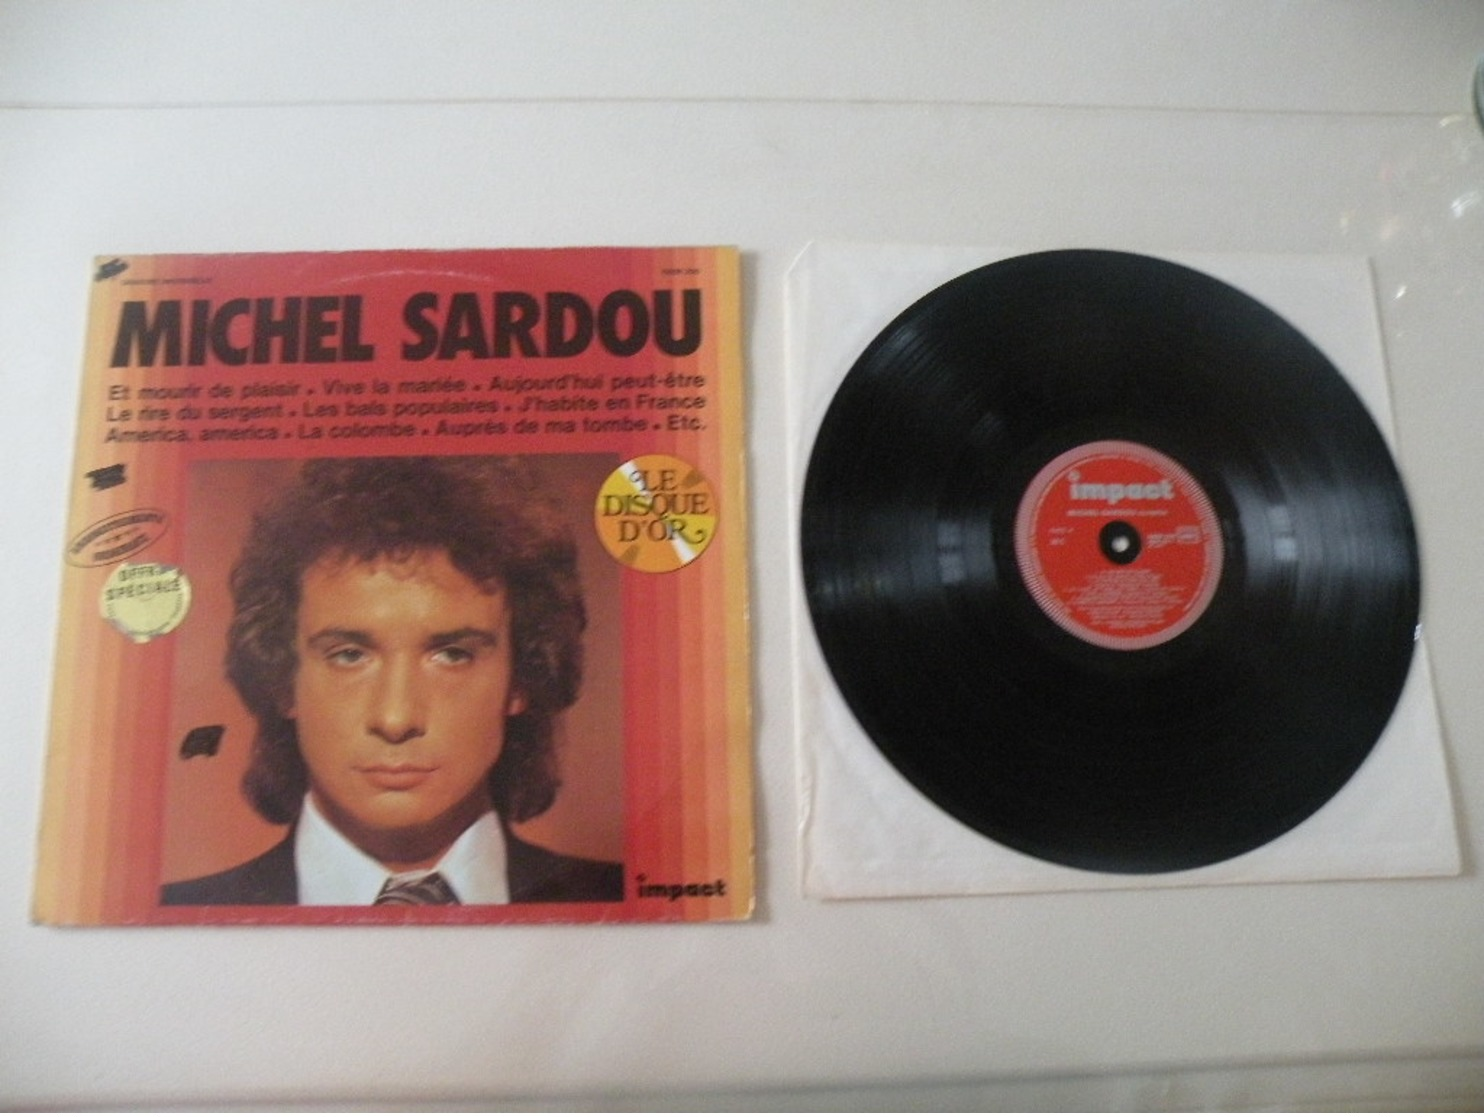 Michel Sardou -1970- (Titres Sur Photos) - Vinyle 33 T LP Disque D'Or - Autres - Musique Française